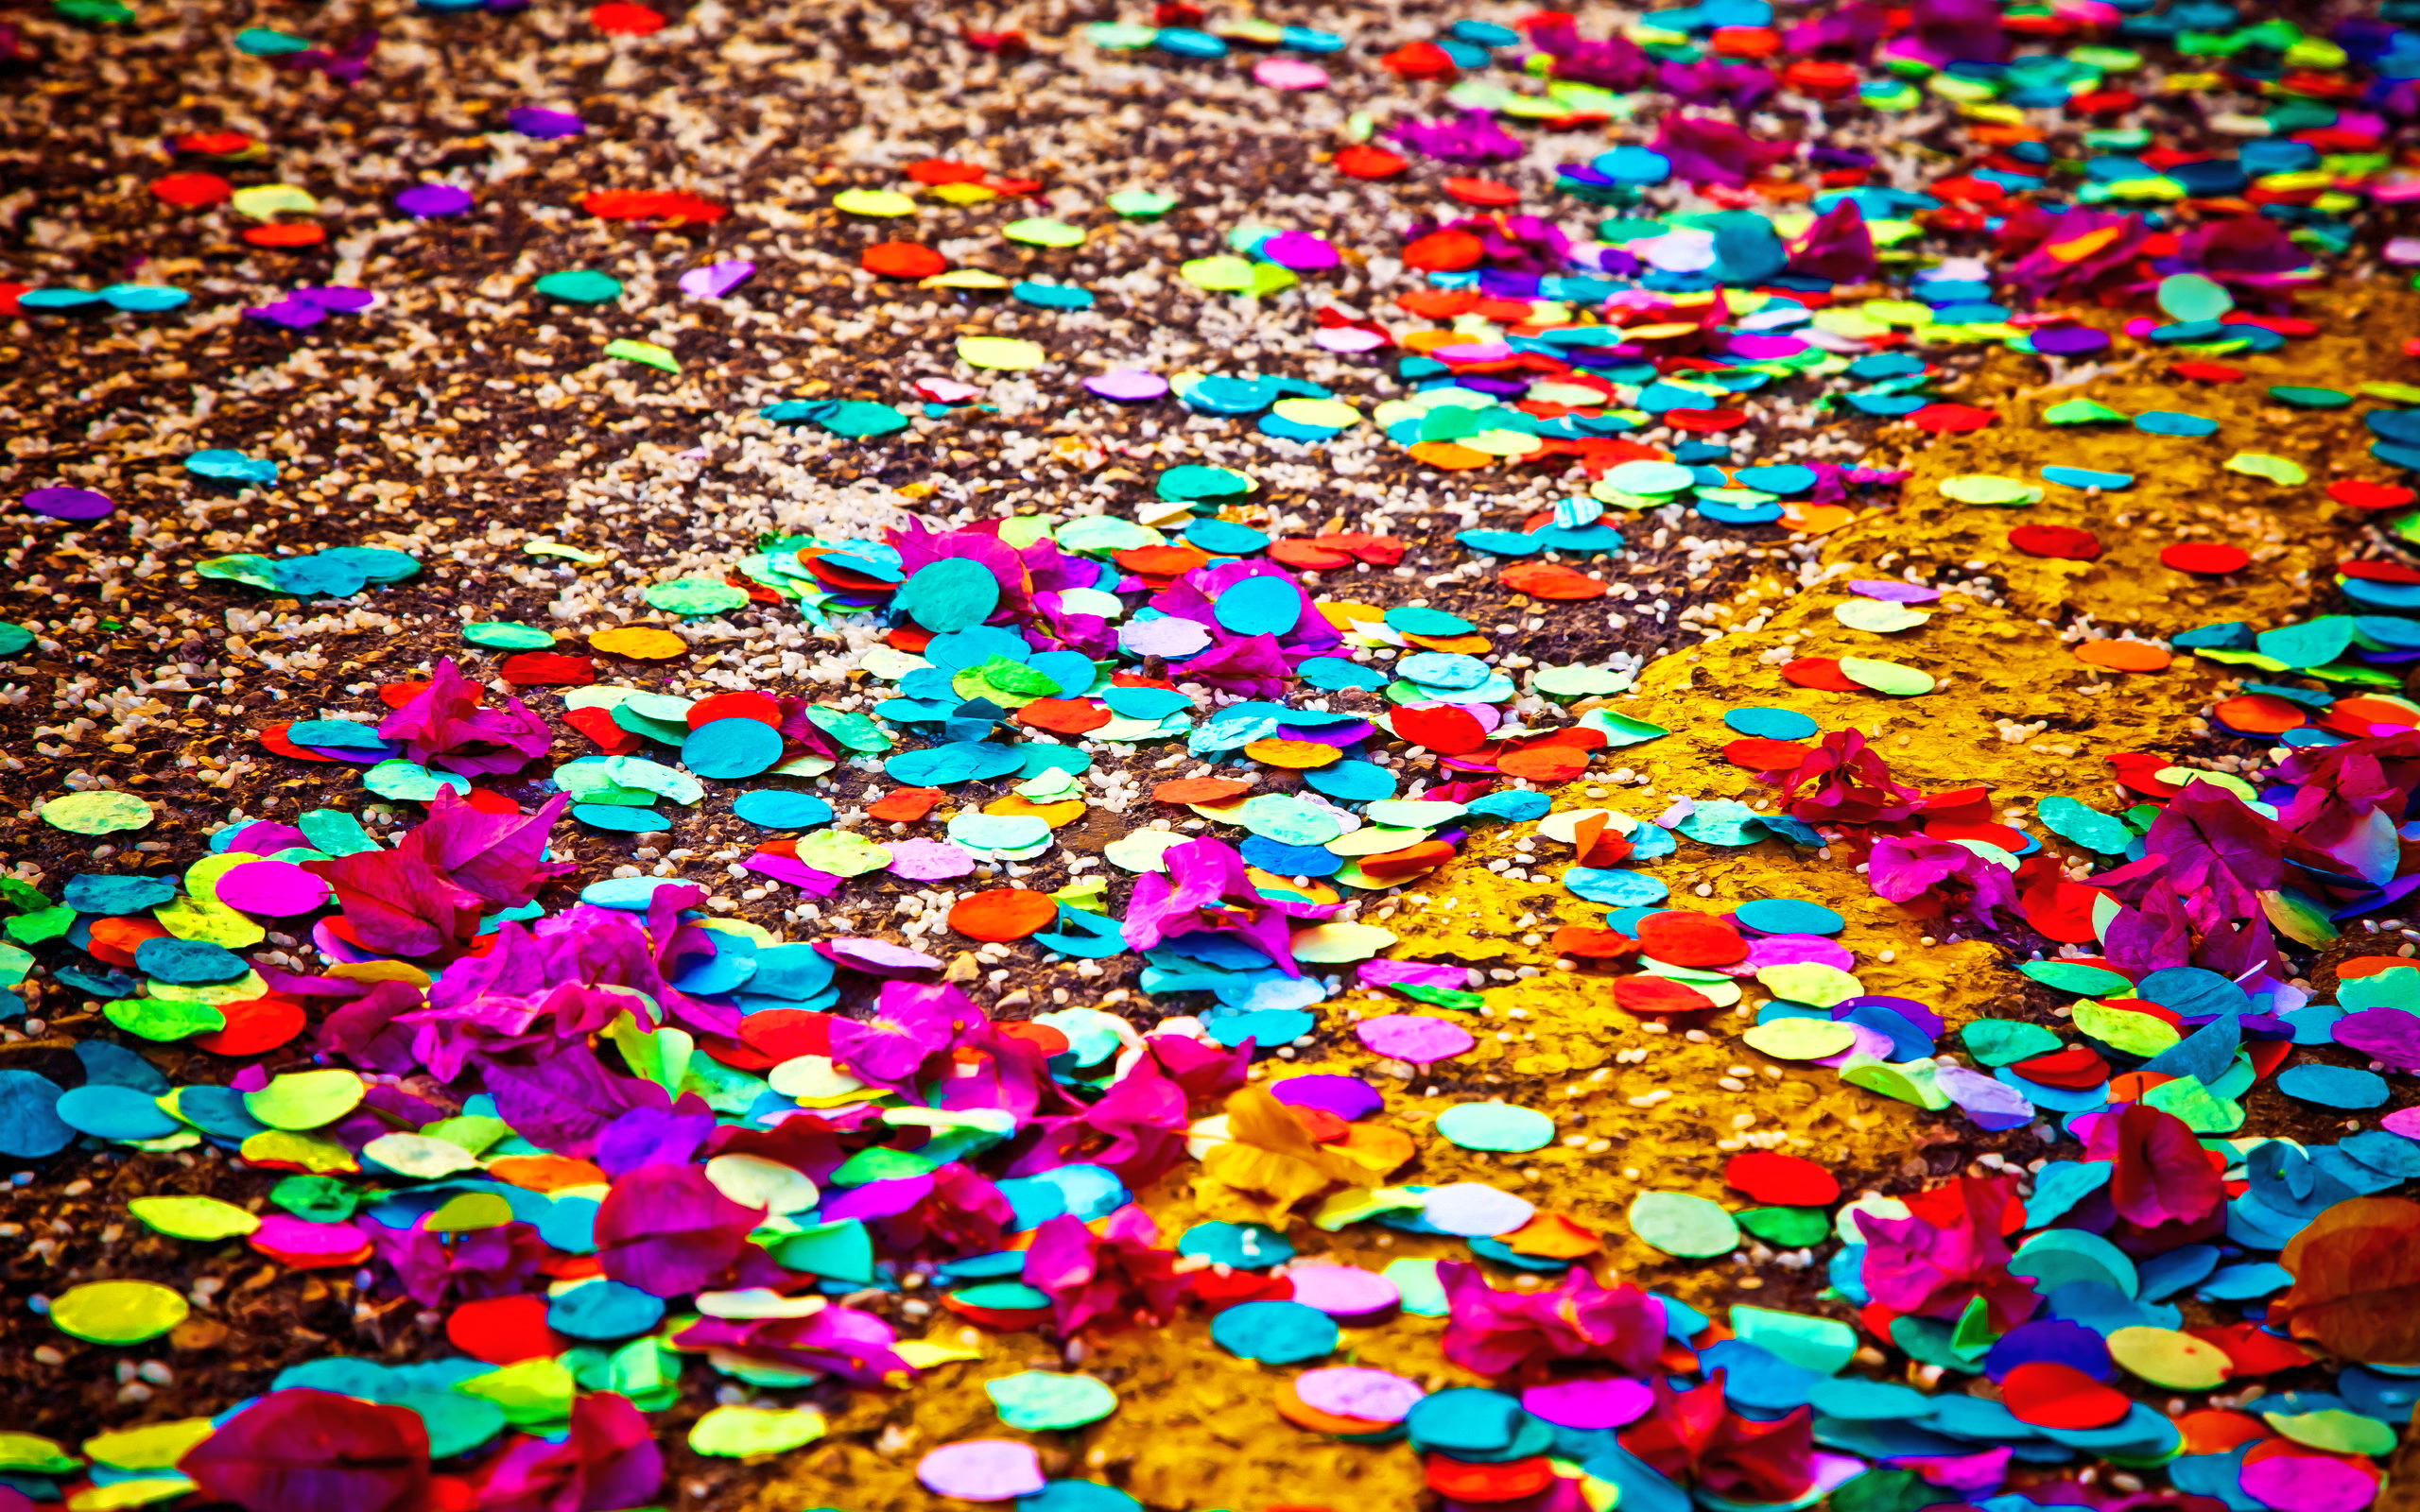 Related For Confetti art. Colored confetti